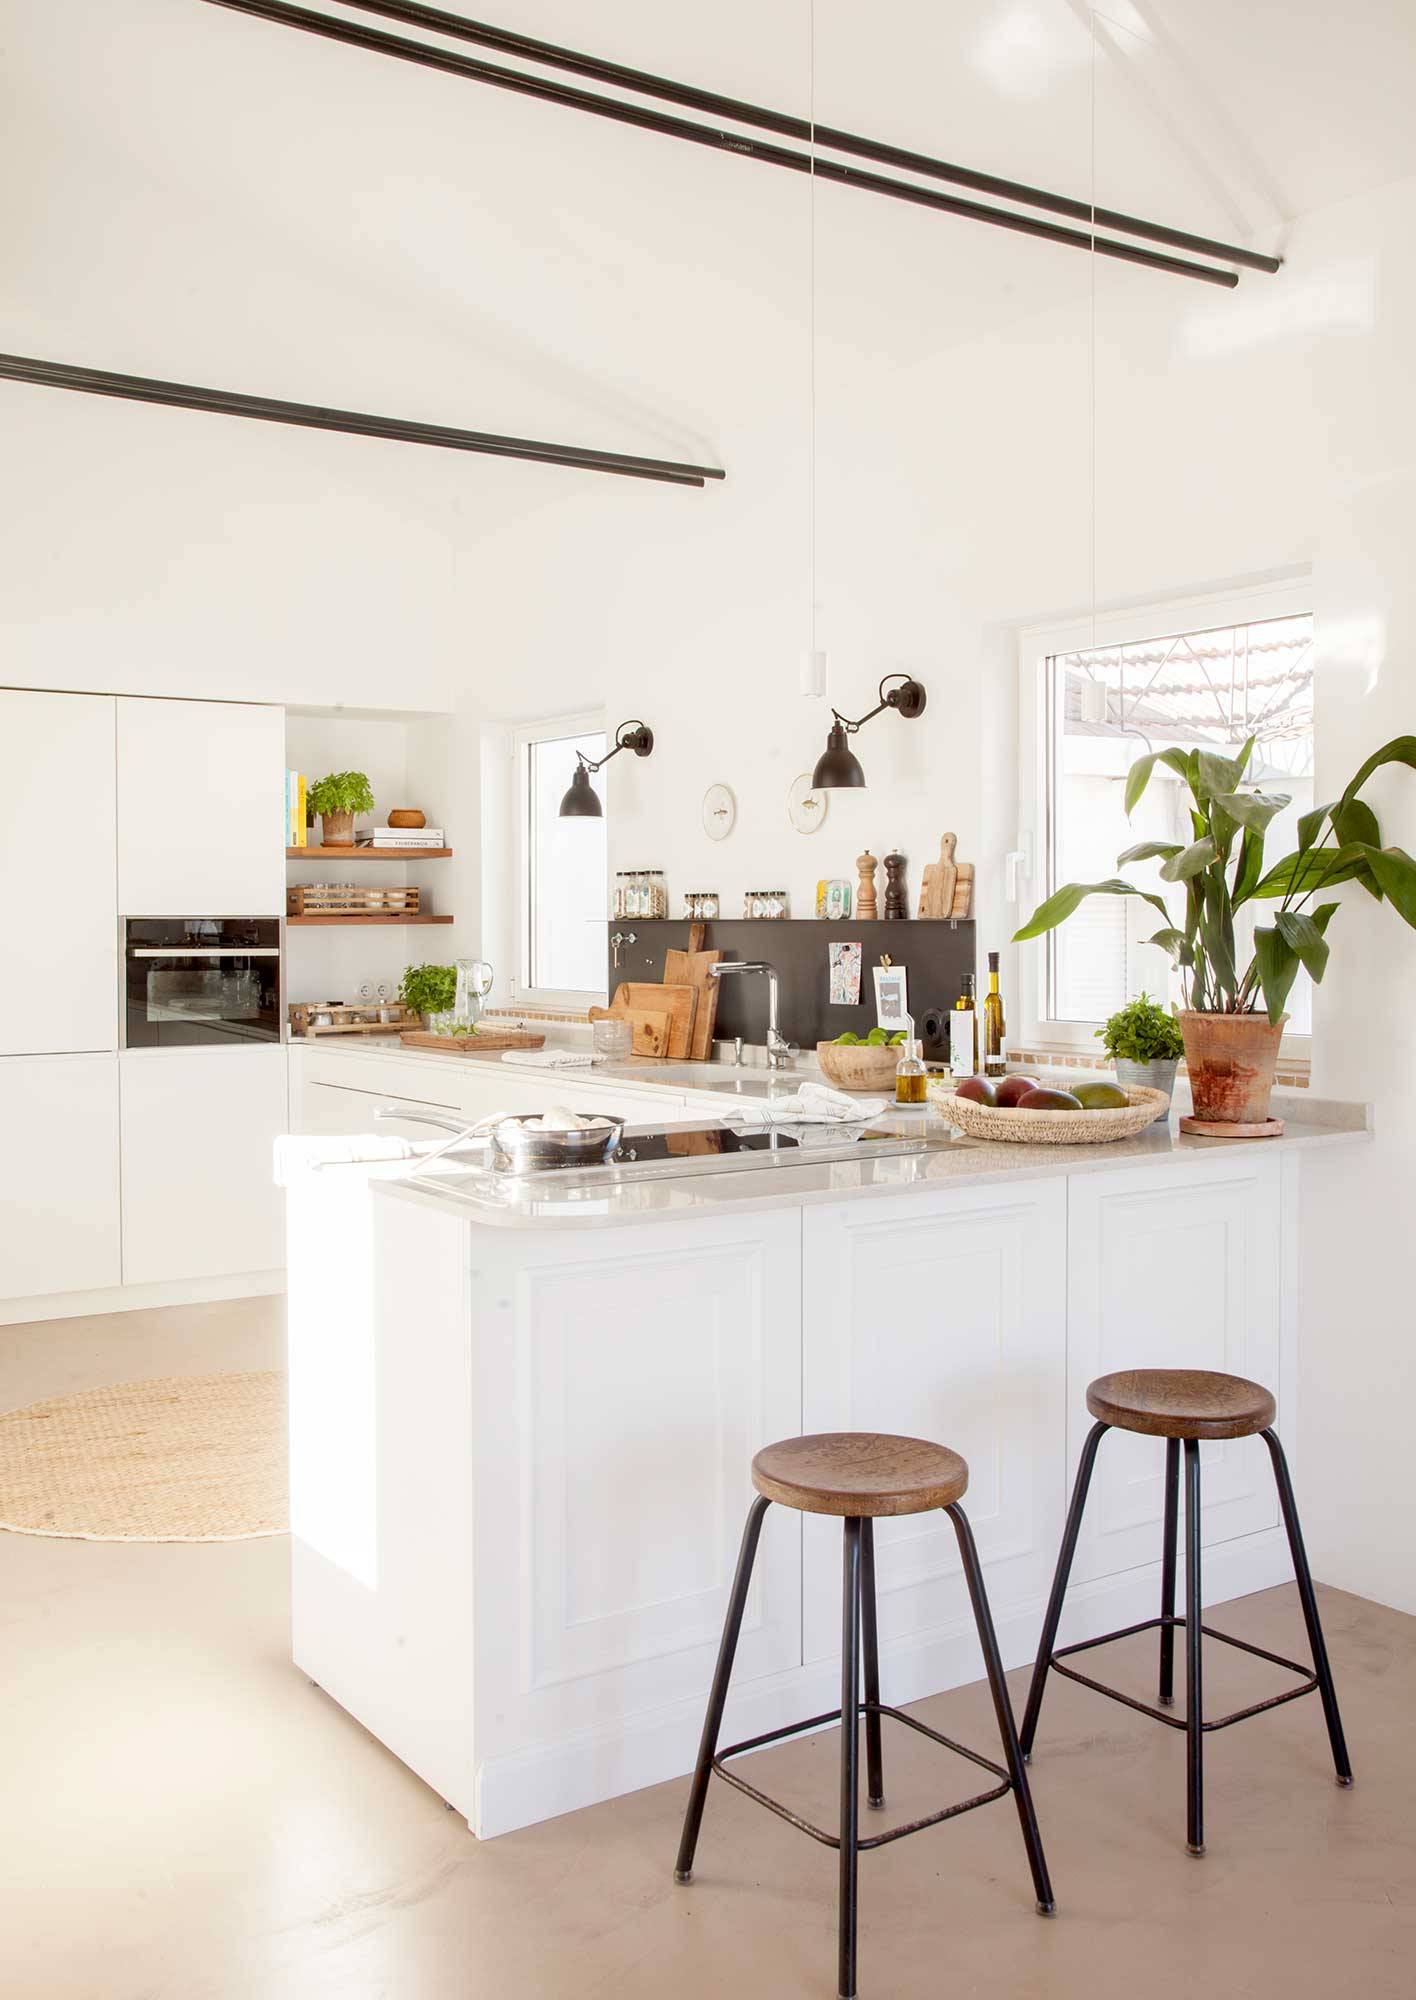 Cocina blanca de diseño con barra con taburetes y muebles lisos.